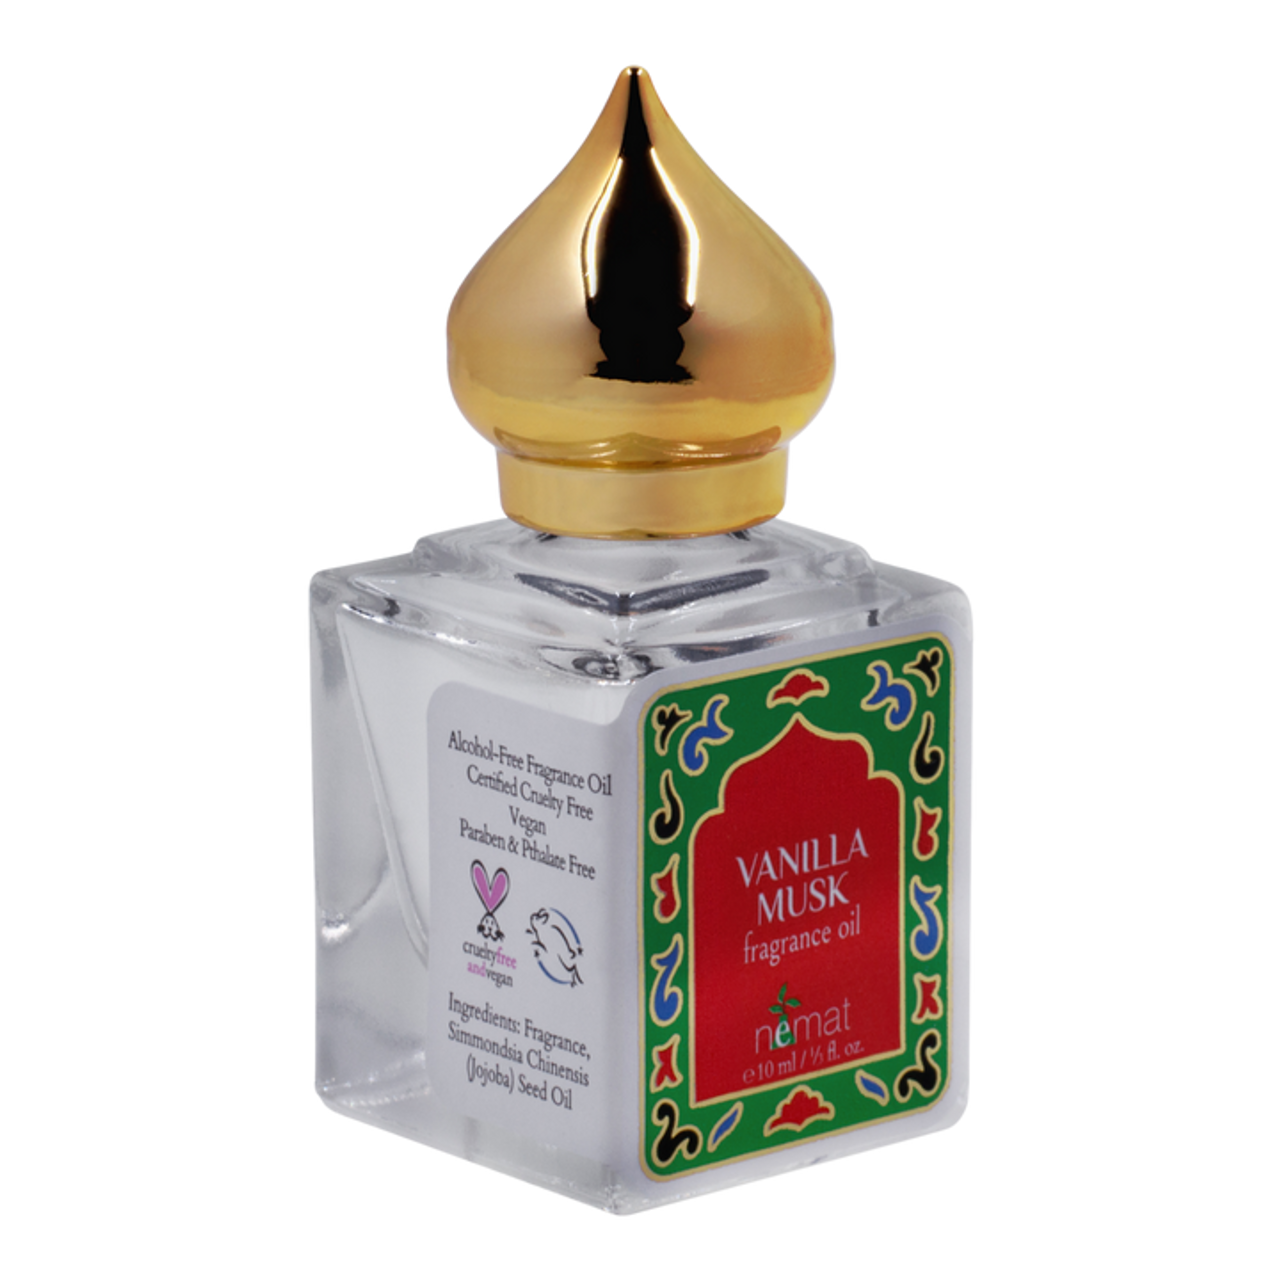 Vanilla Musk - Perfume Oil